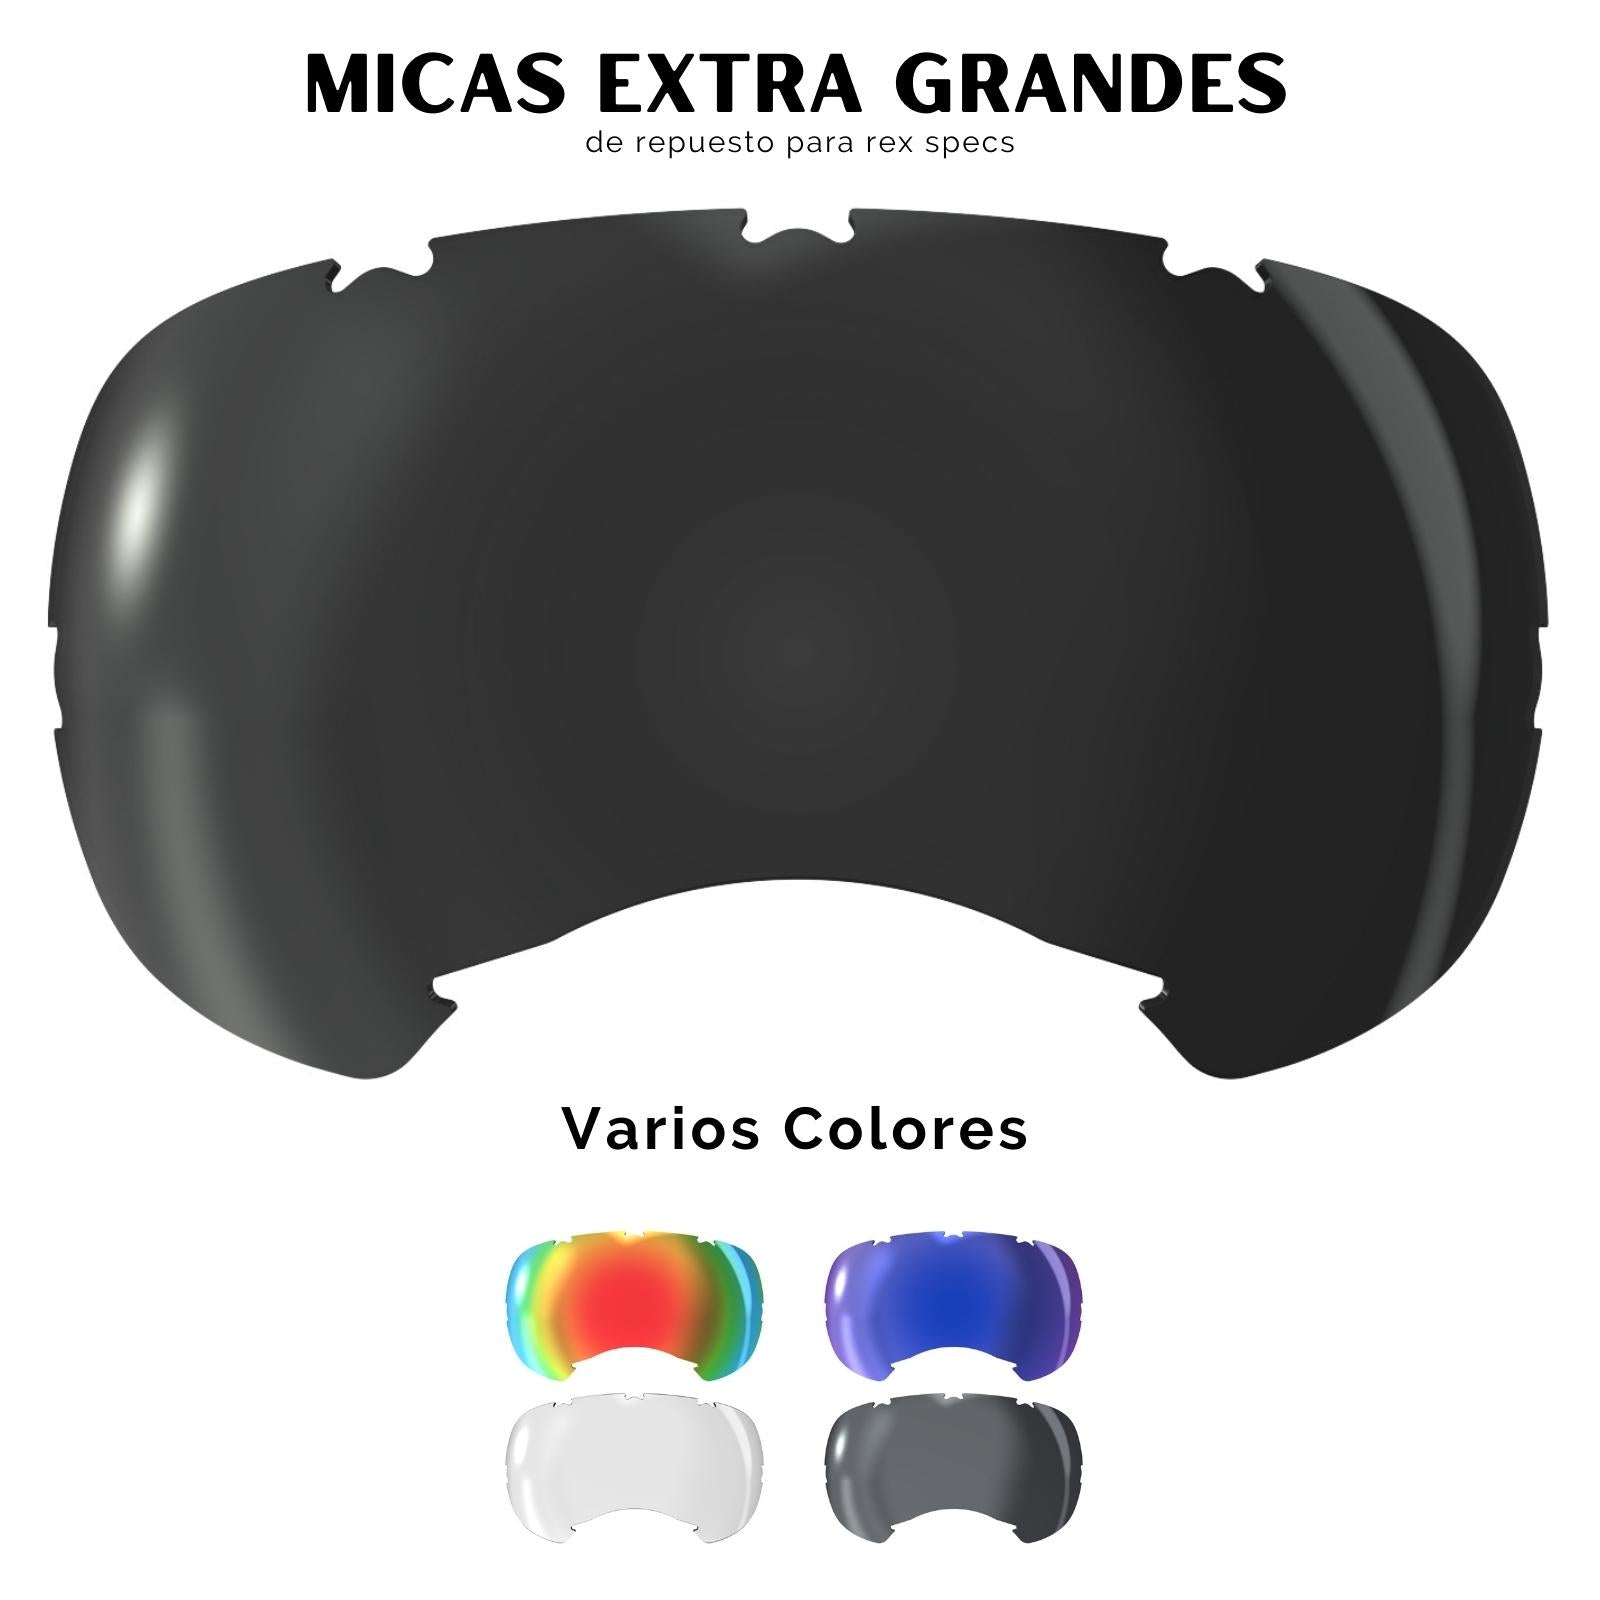 V2 Micas de Repuesto para Goggles V2 Extra Grandes / Lentes de Protección Para Perros Rex Specs®